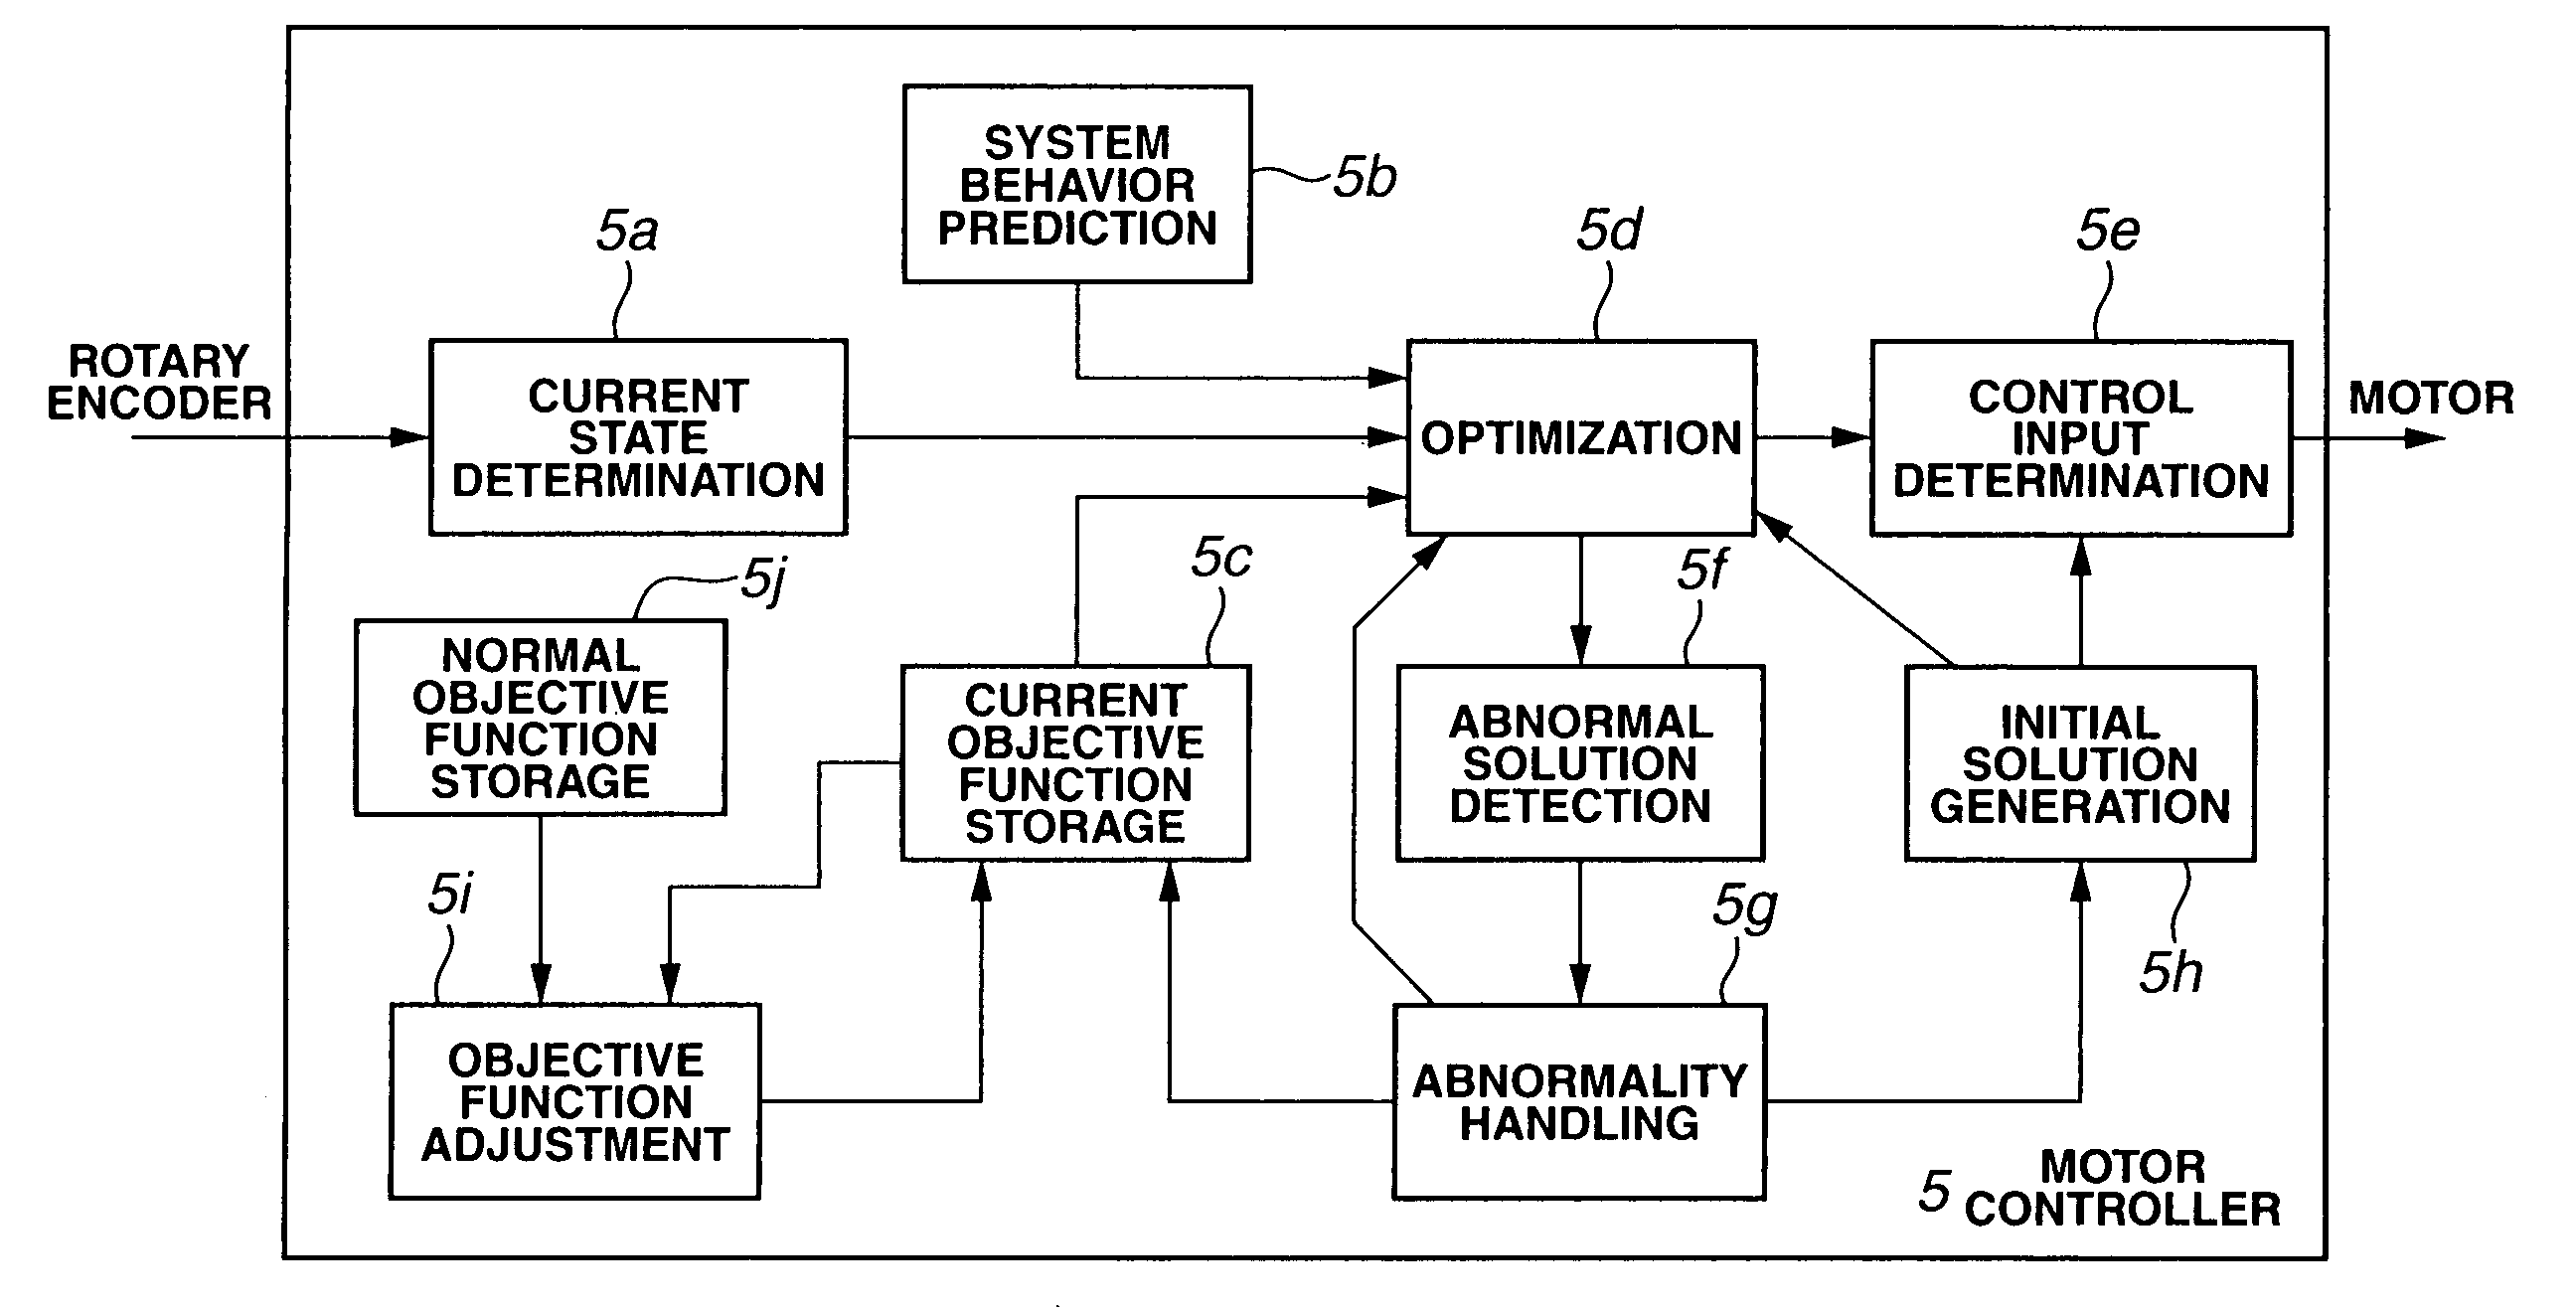 Model predictive control apparatus